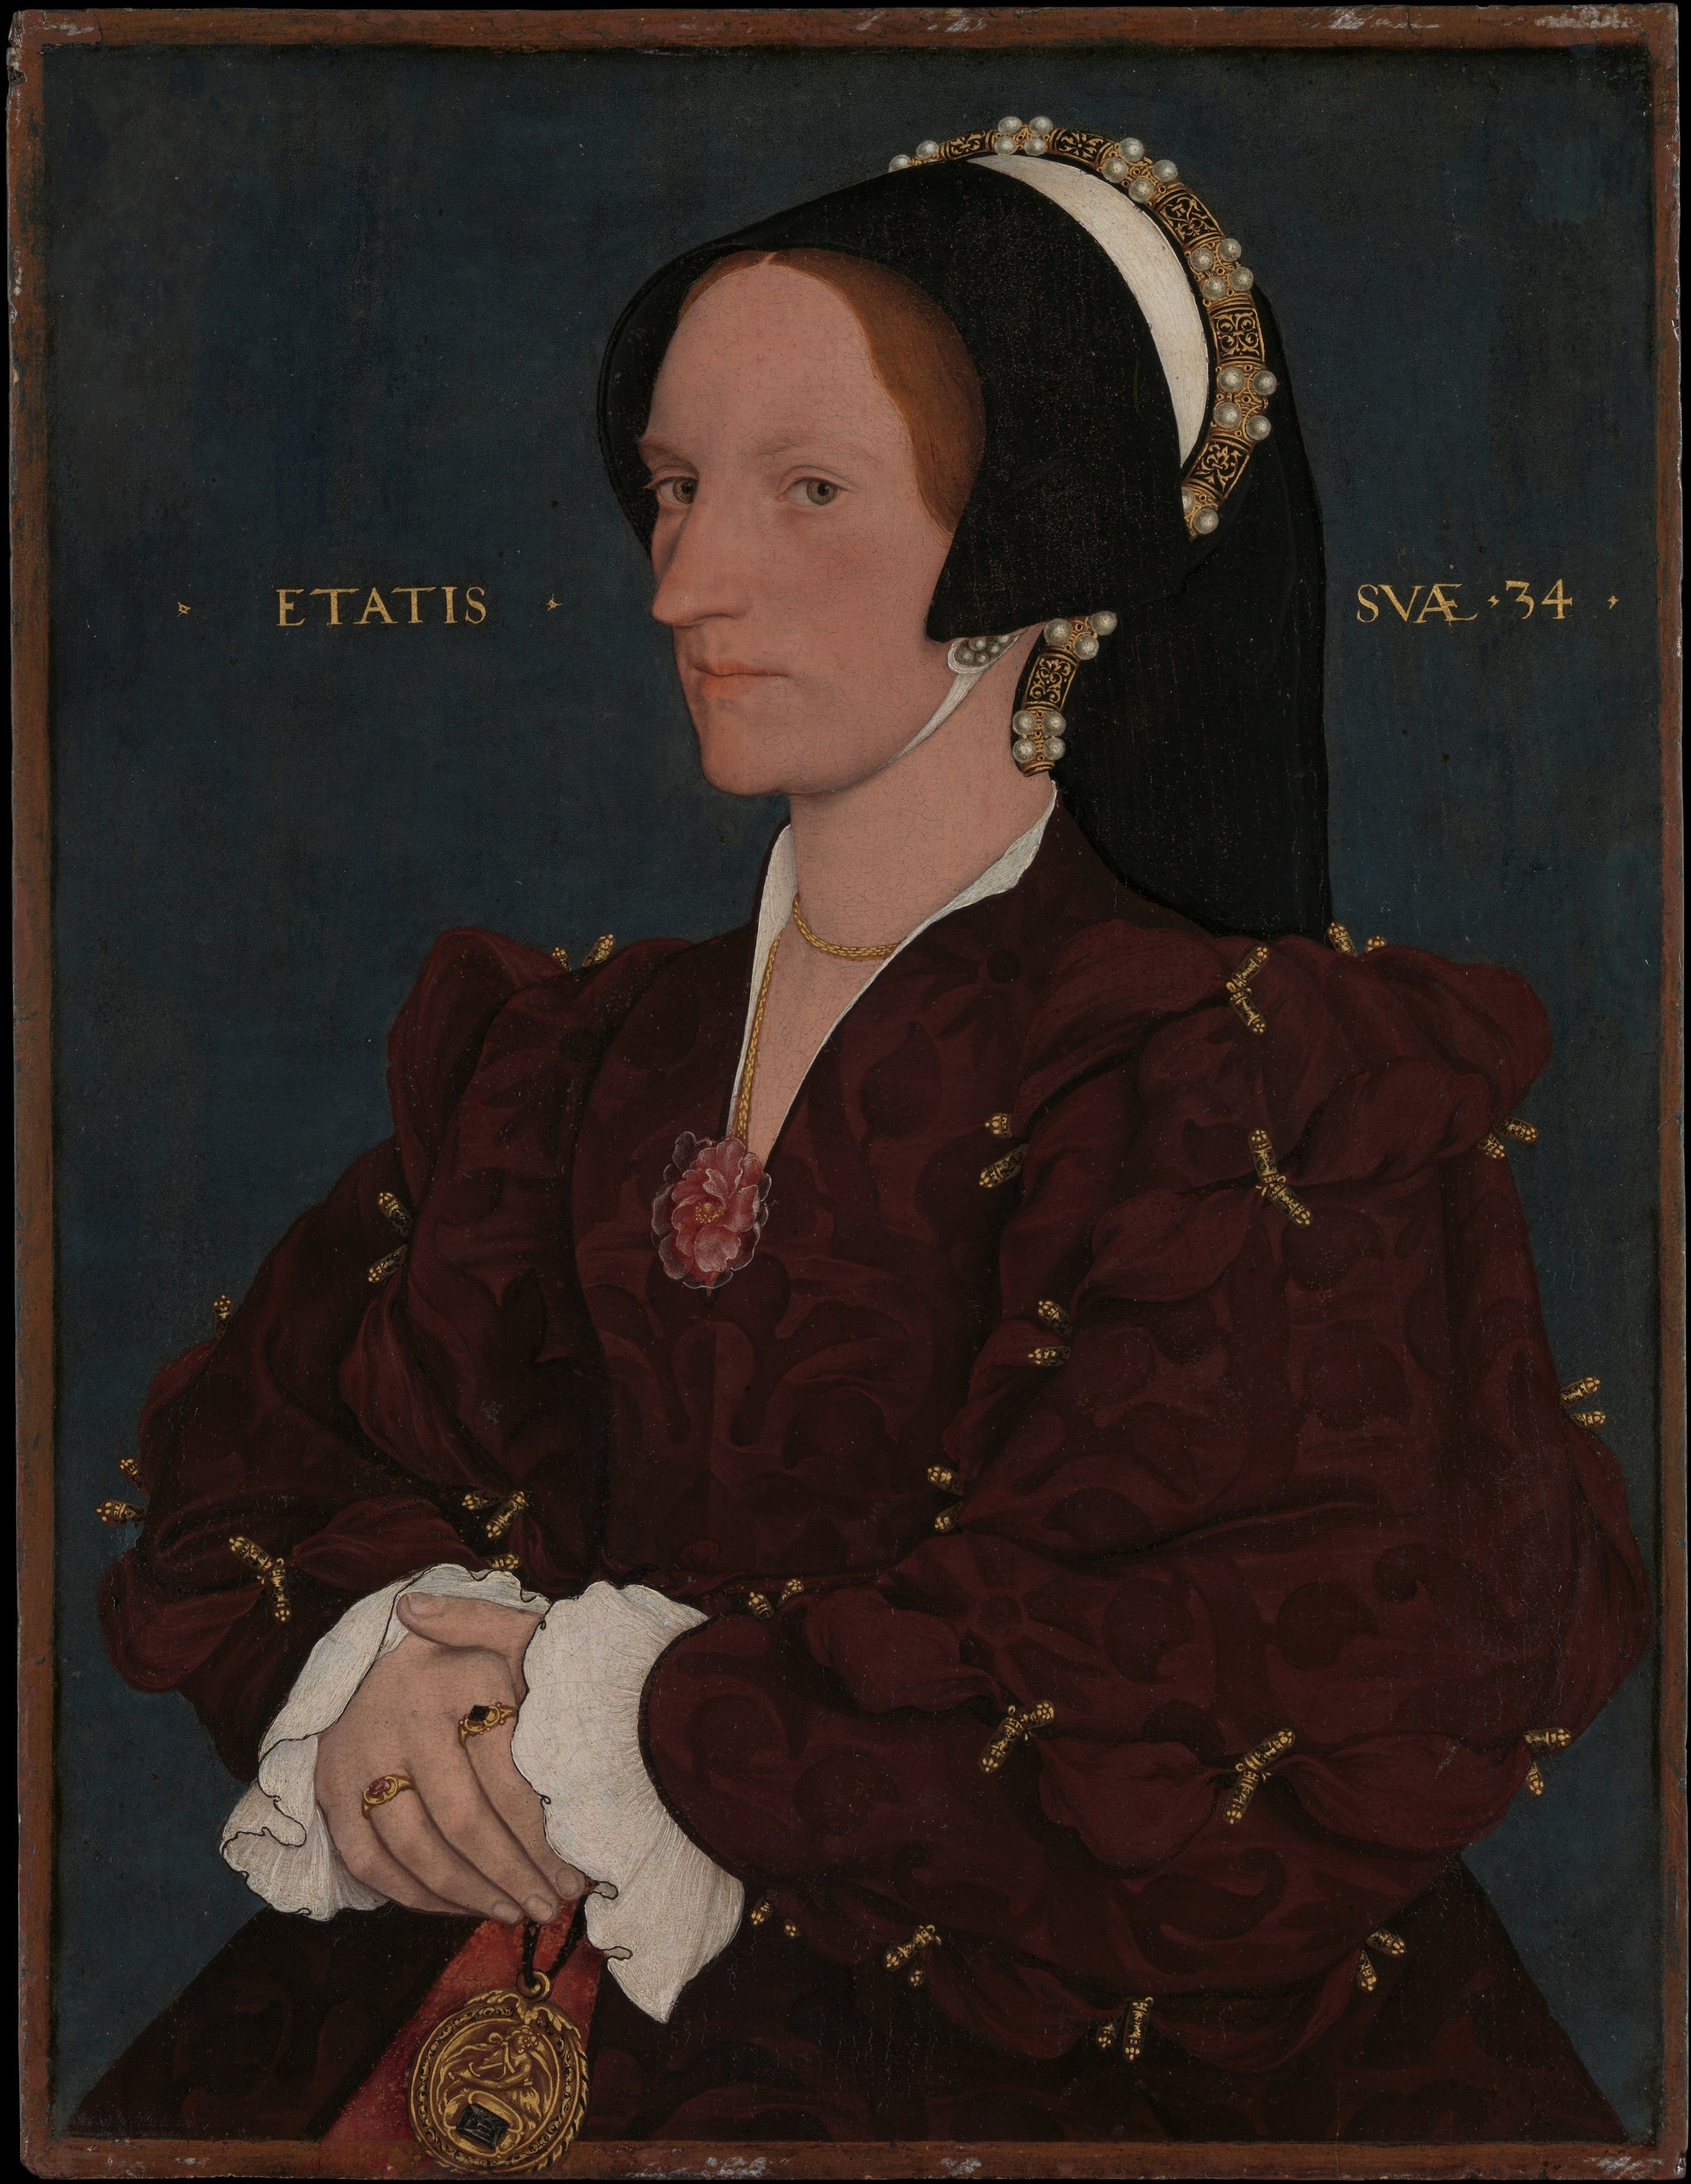 Margaret Wyatt, Lady Lee by Hans Holbein il Giovane - 1540 - 42.5 x 32.7 cm 